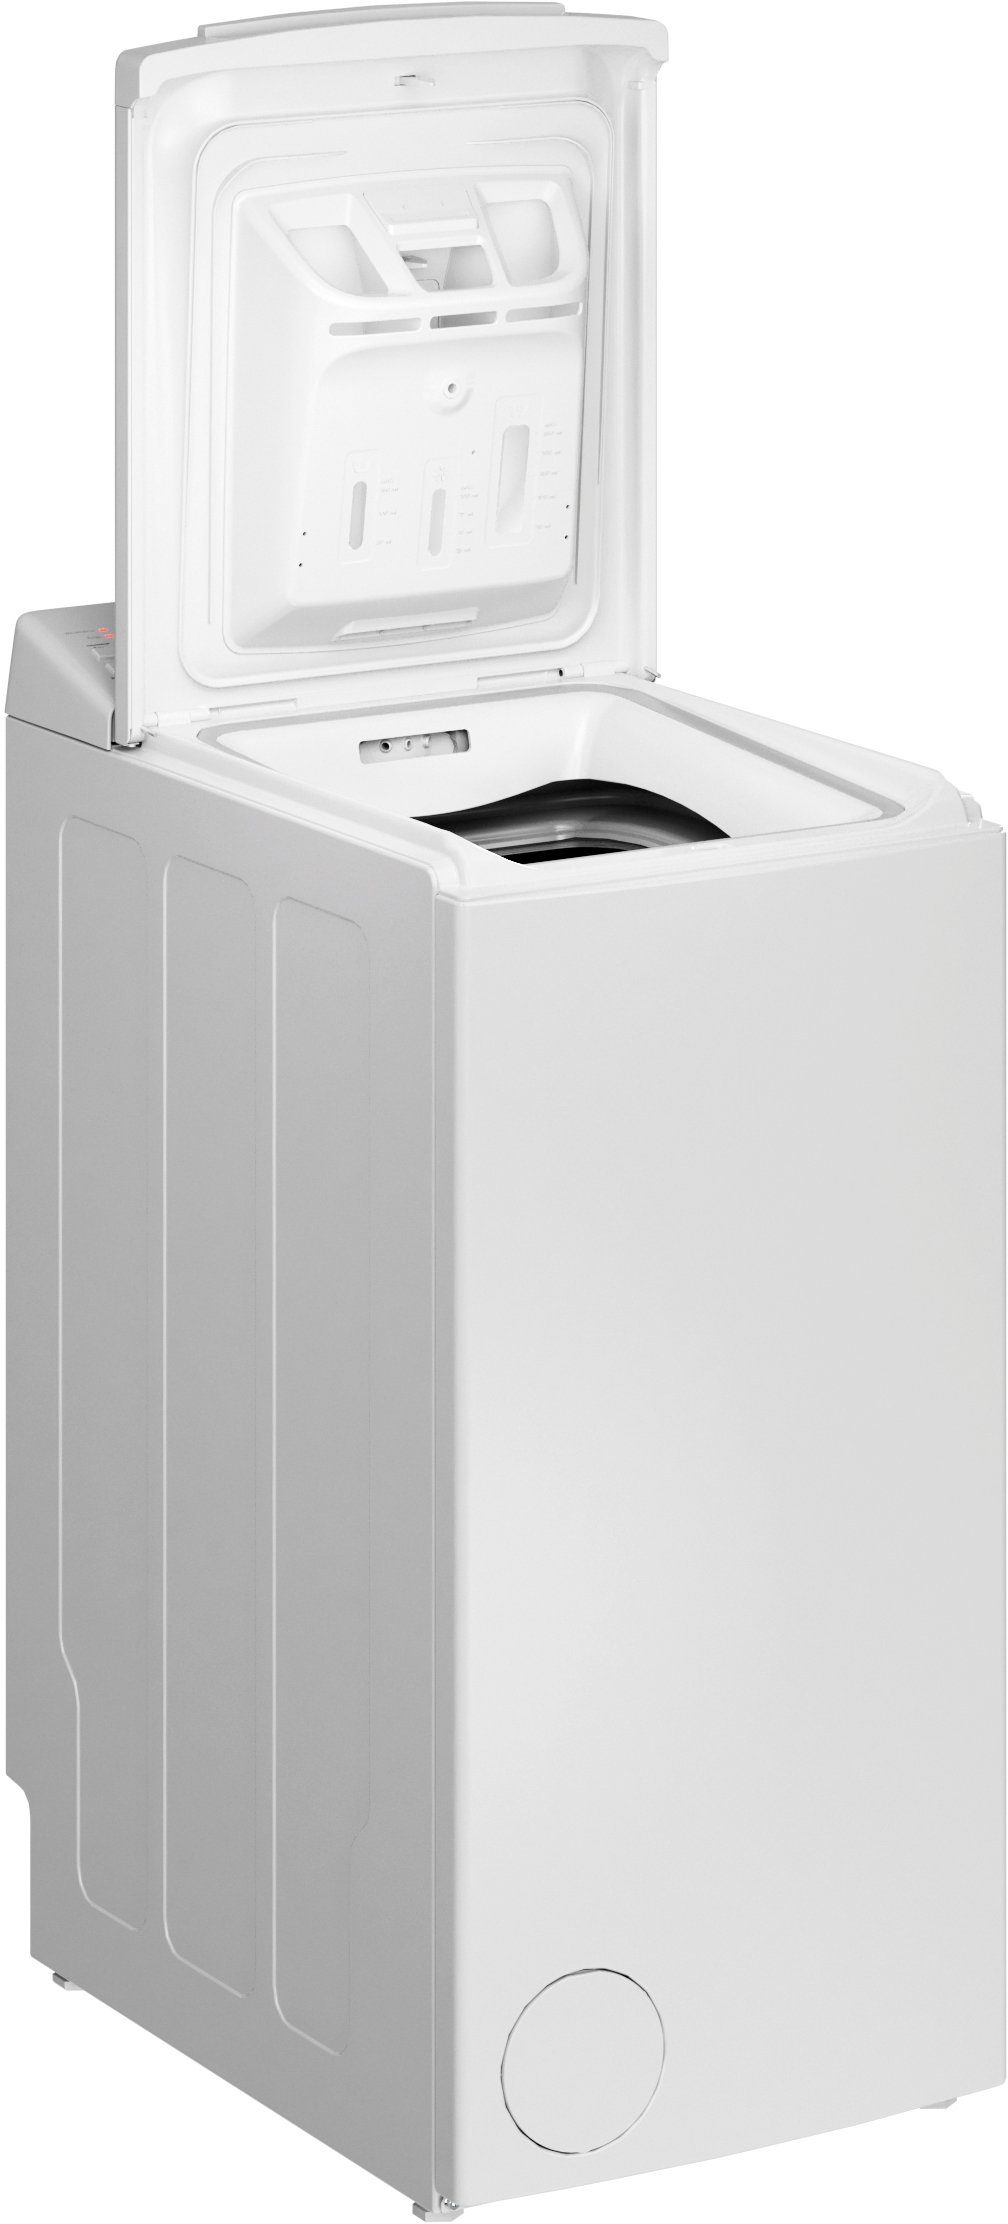 BAUKNECHT Waschmaschine Toplader WAT Prime 550 SD N, 5,5 kg, 1000 U/min  online kaufen | OTTO